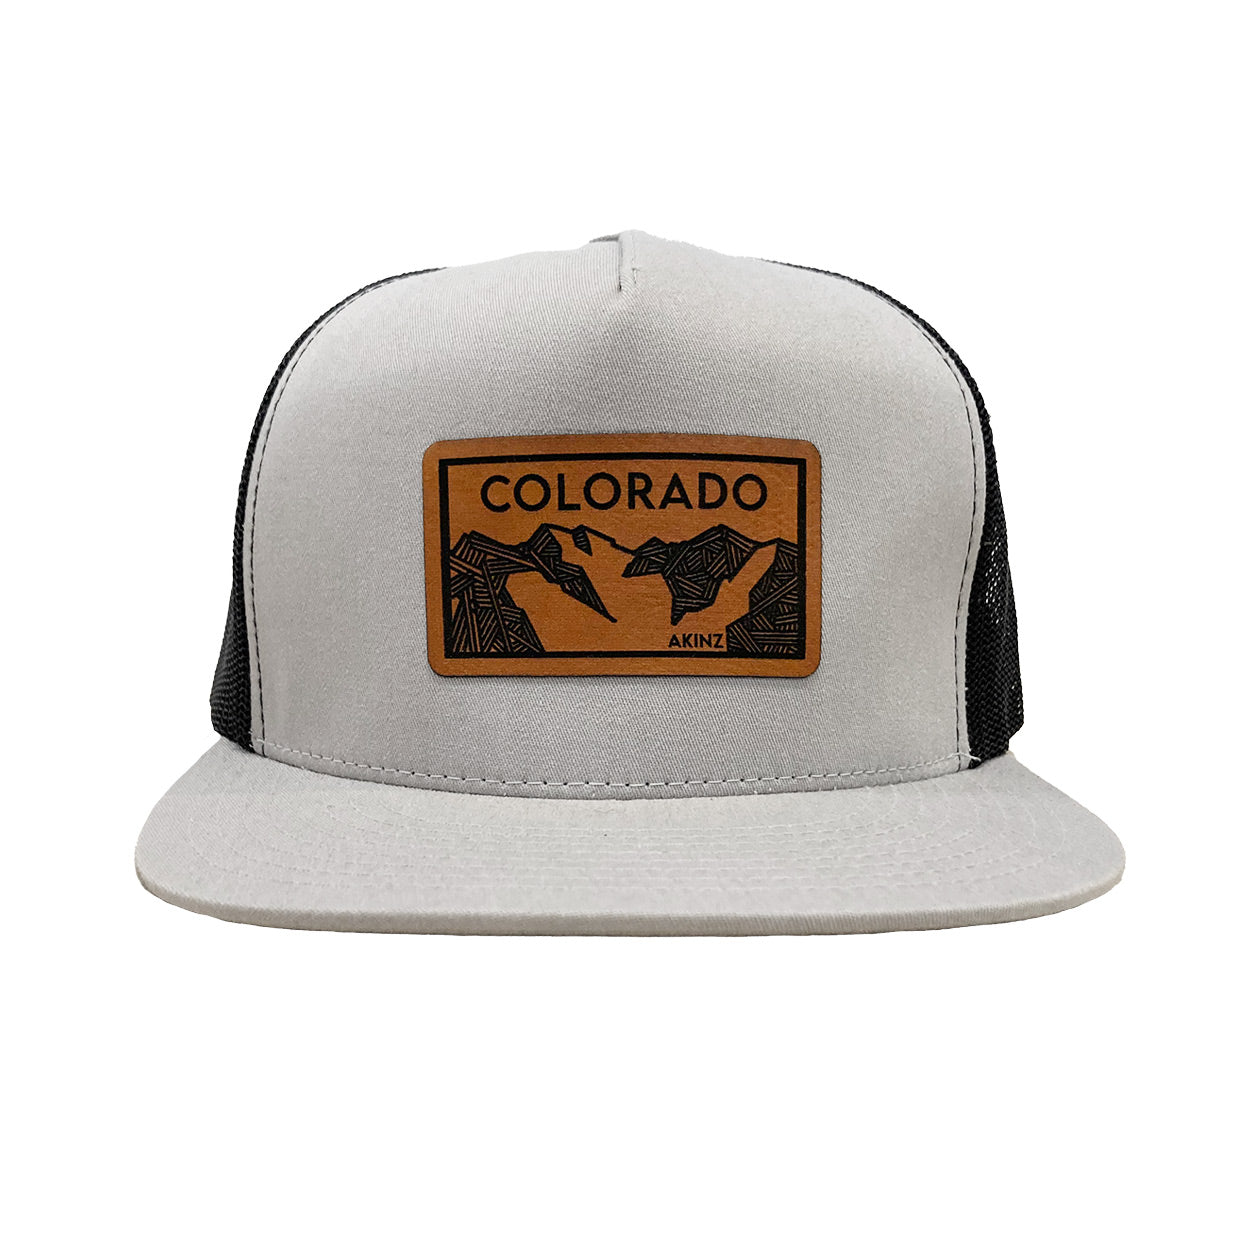 Colorado-patch-hat-silver-gray.jpg